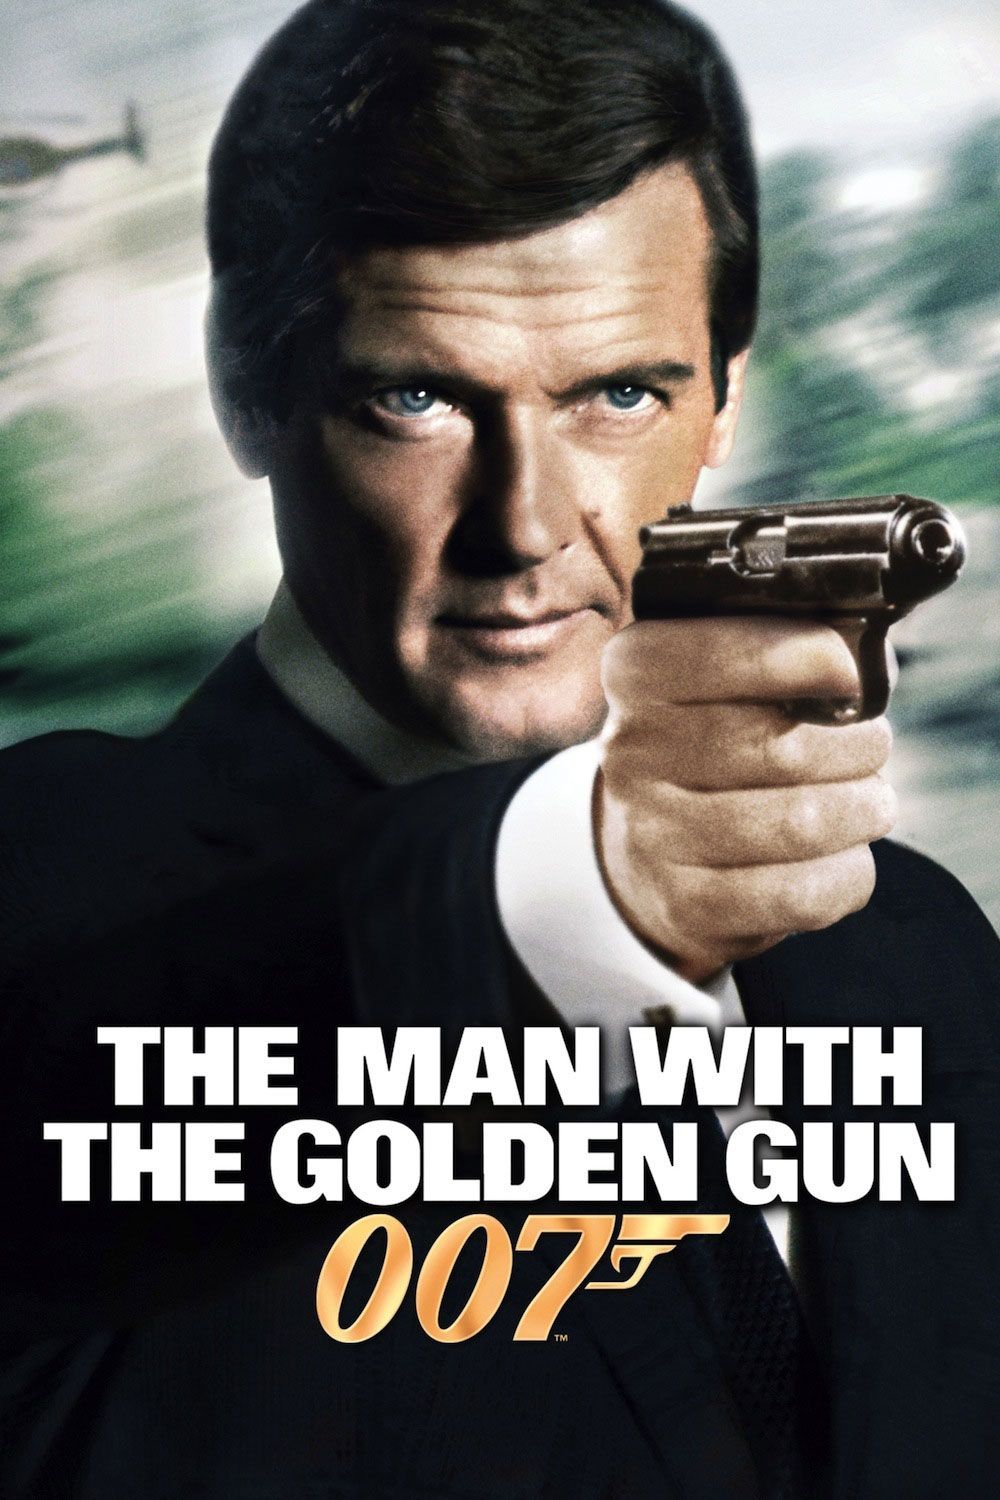 Free James Bond Movies